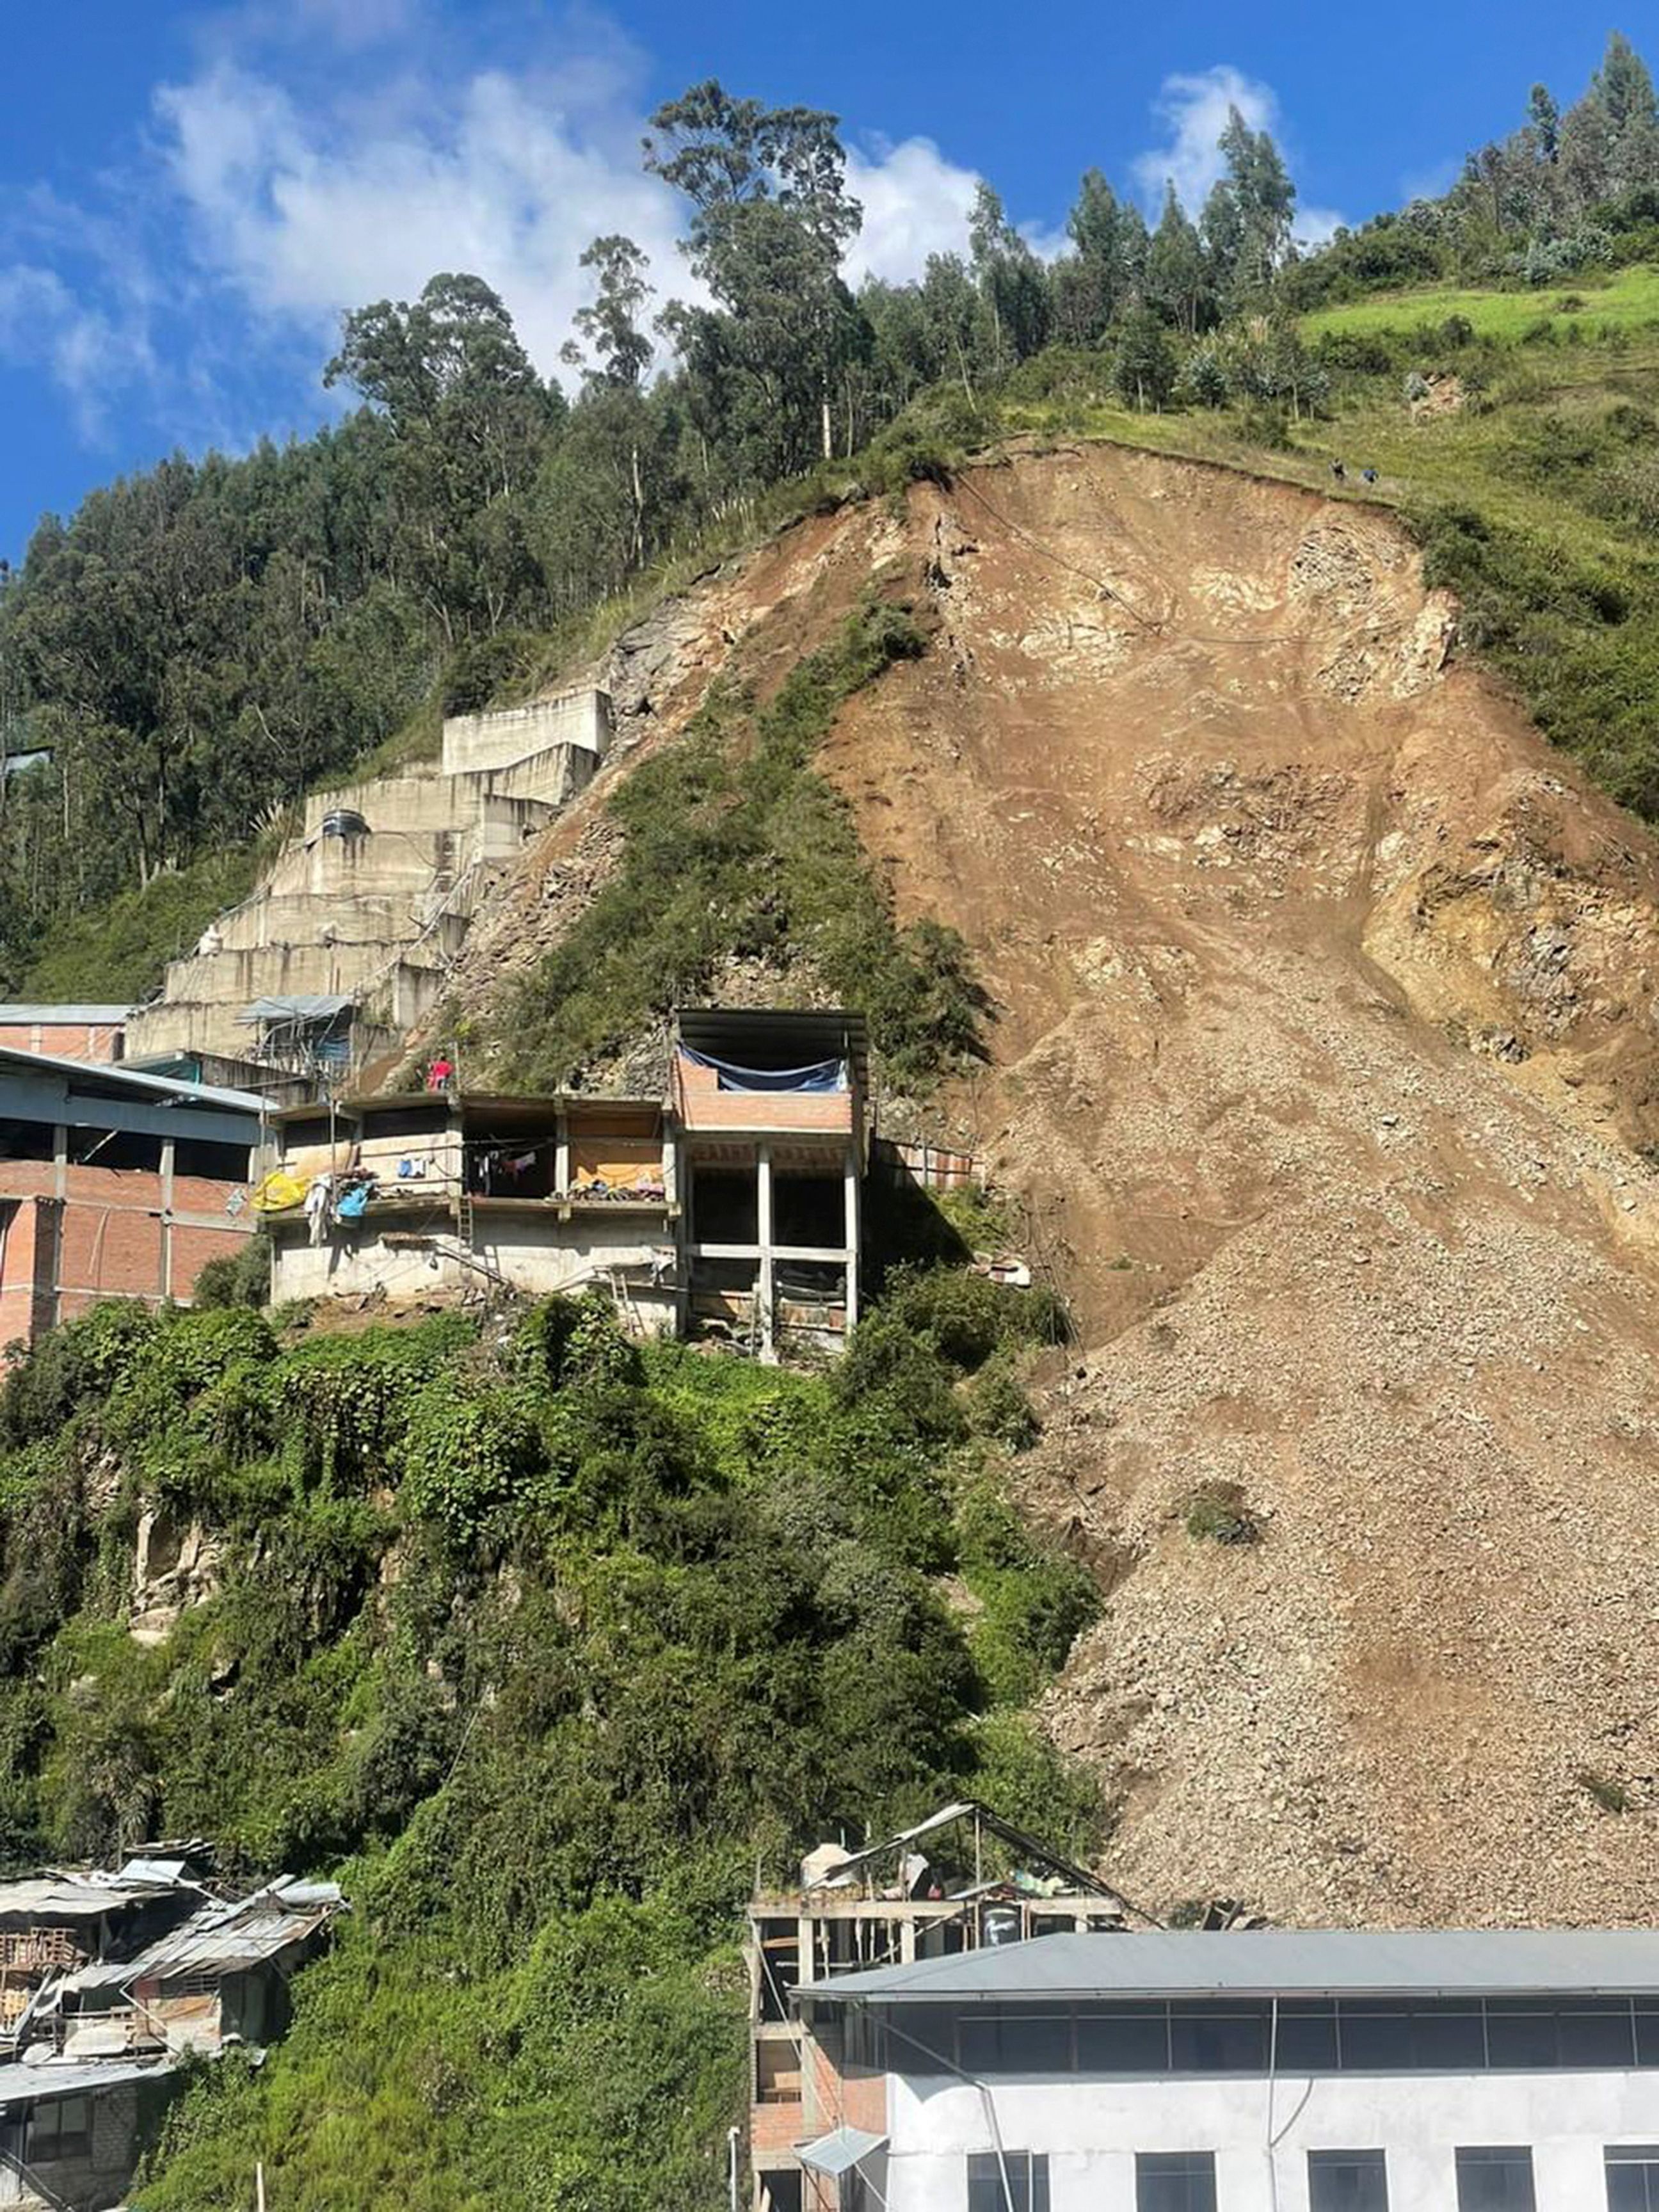 Landslide Landslide Safety